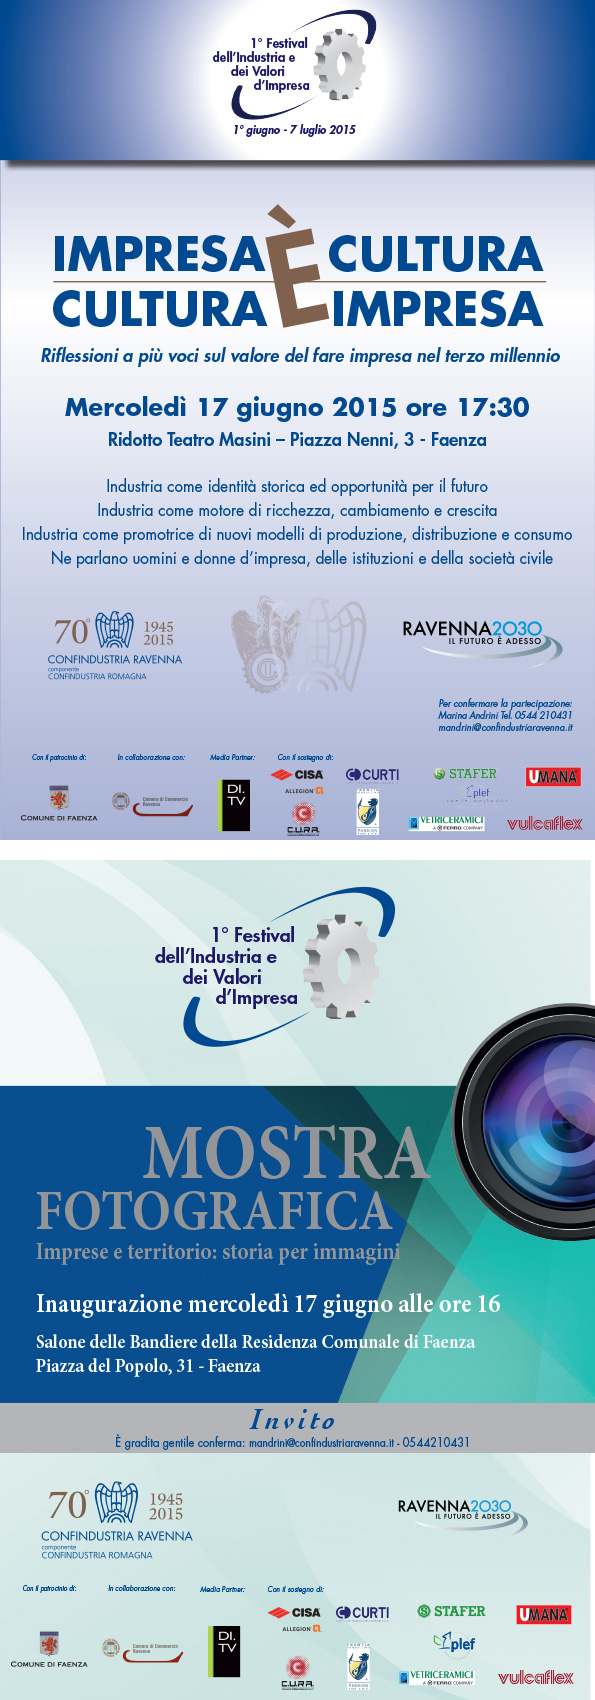 Siamo lieti di annunciare la partecipazione di Faentia Consulting come Premium Partner dell'evento "1° Festival dell'Industria e dei Valori di Impresa", nell'ambito dei festeggiamenti per i 70 anni di Confindustria Ravenna